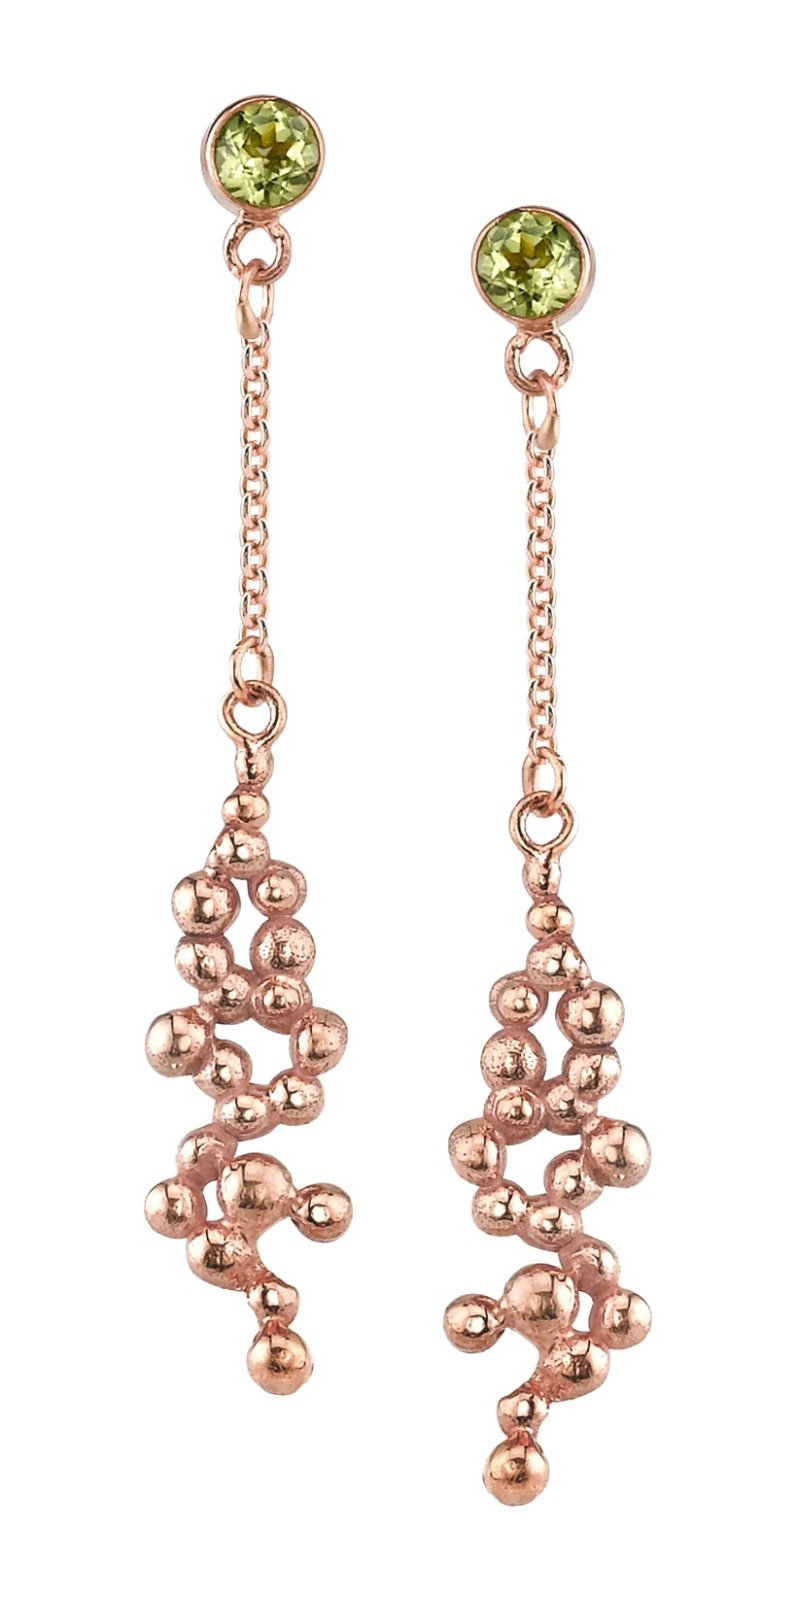 Nebula Earrings - Ele Keats Jewelry